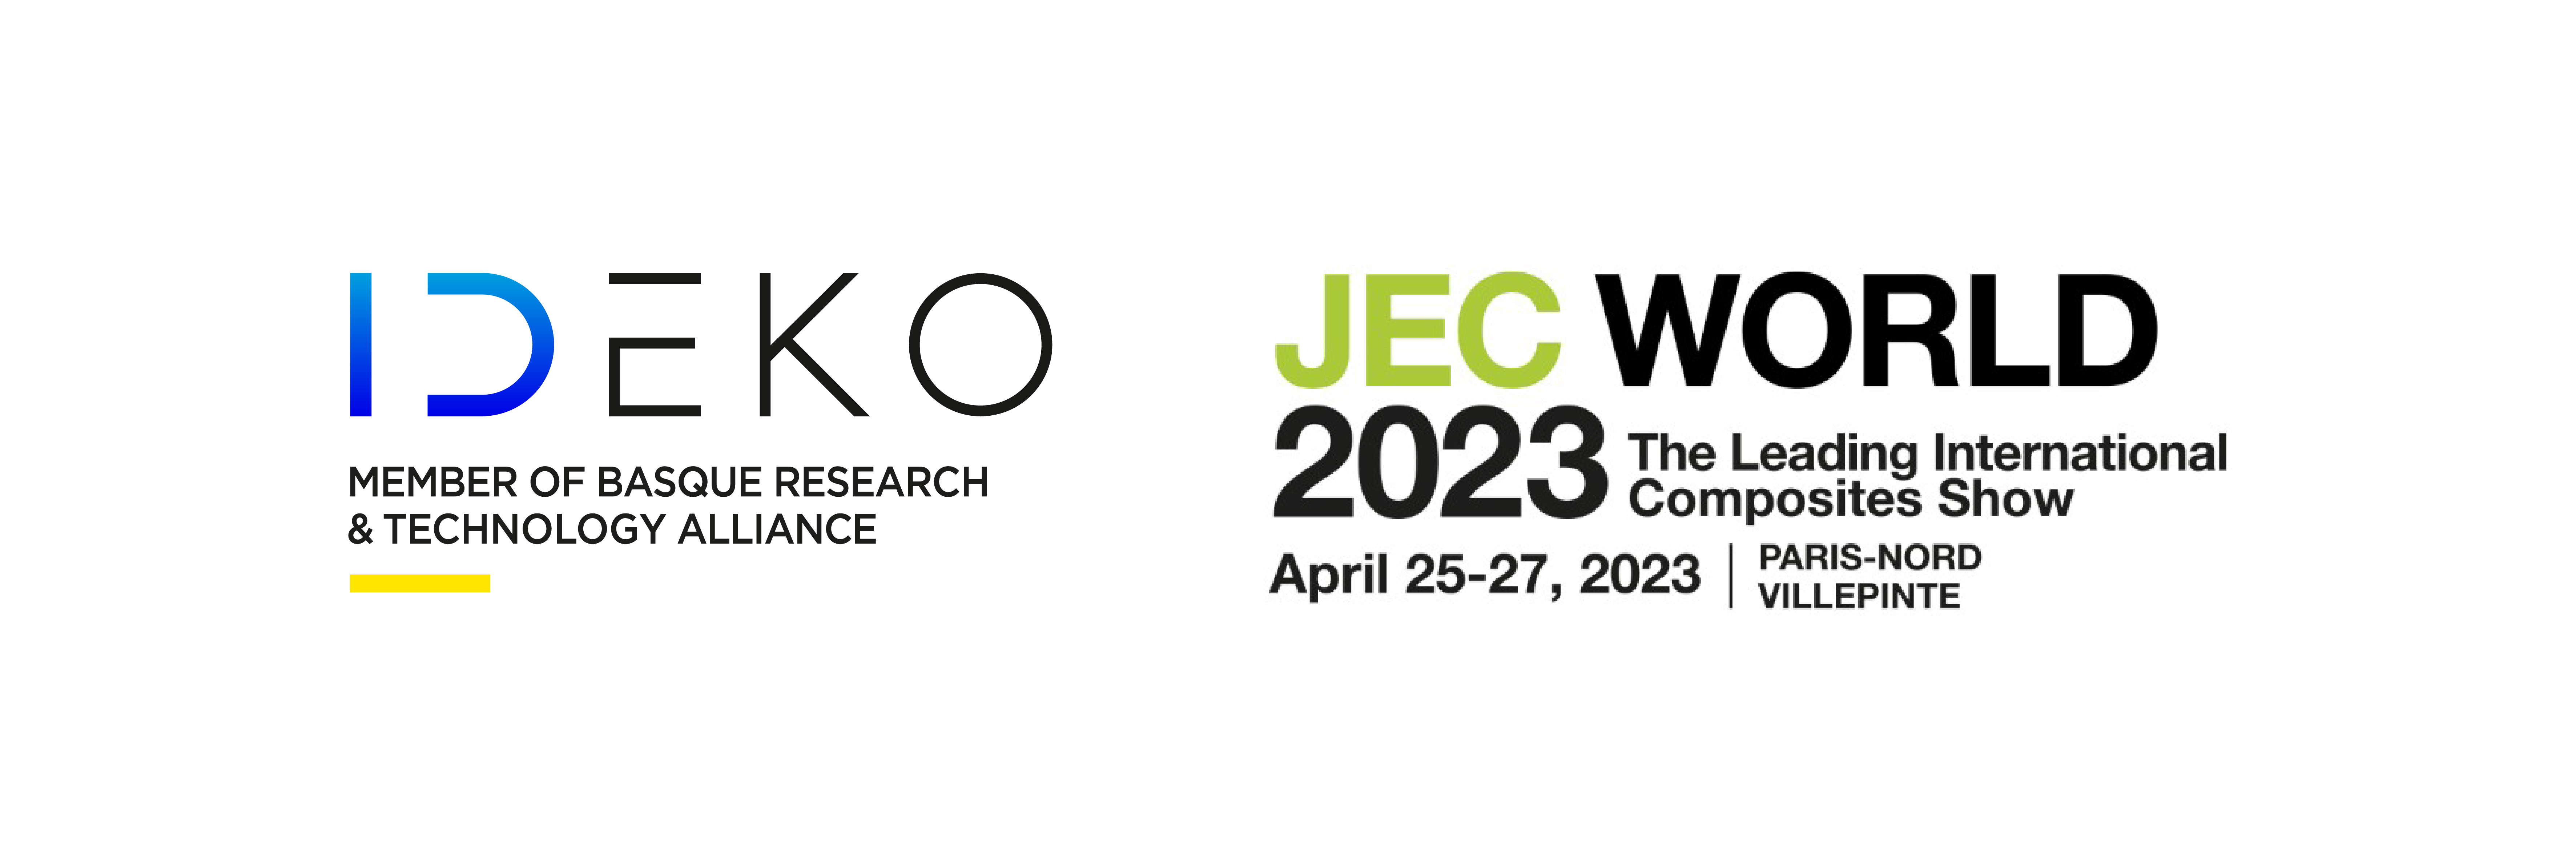 IDEKOK konpositeko piezen fabrikazio automatizaturako egindako aurrerapenak aurkeztuko ditu JEC World 2023n